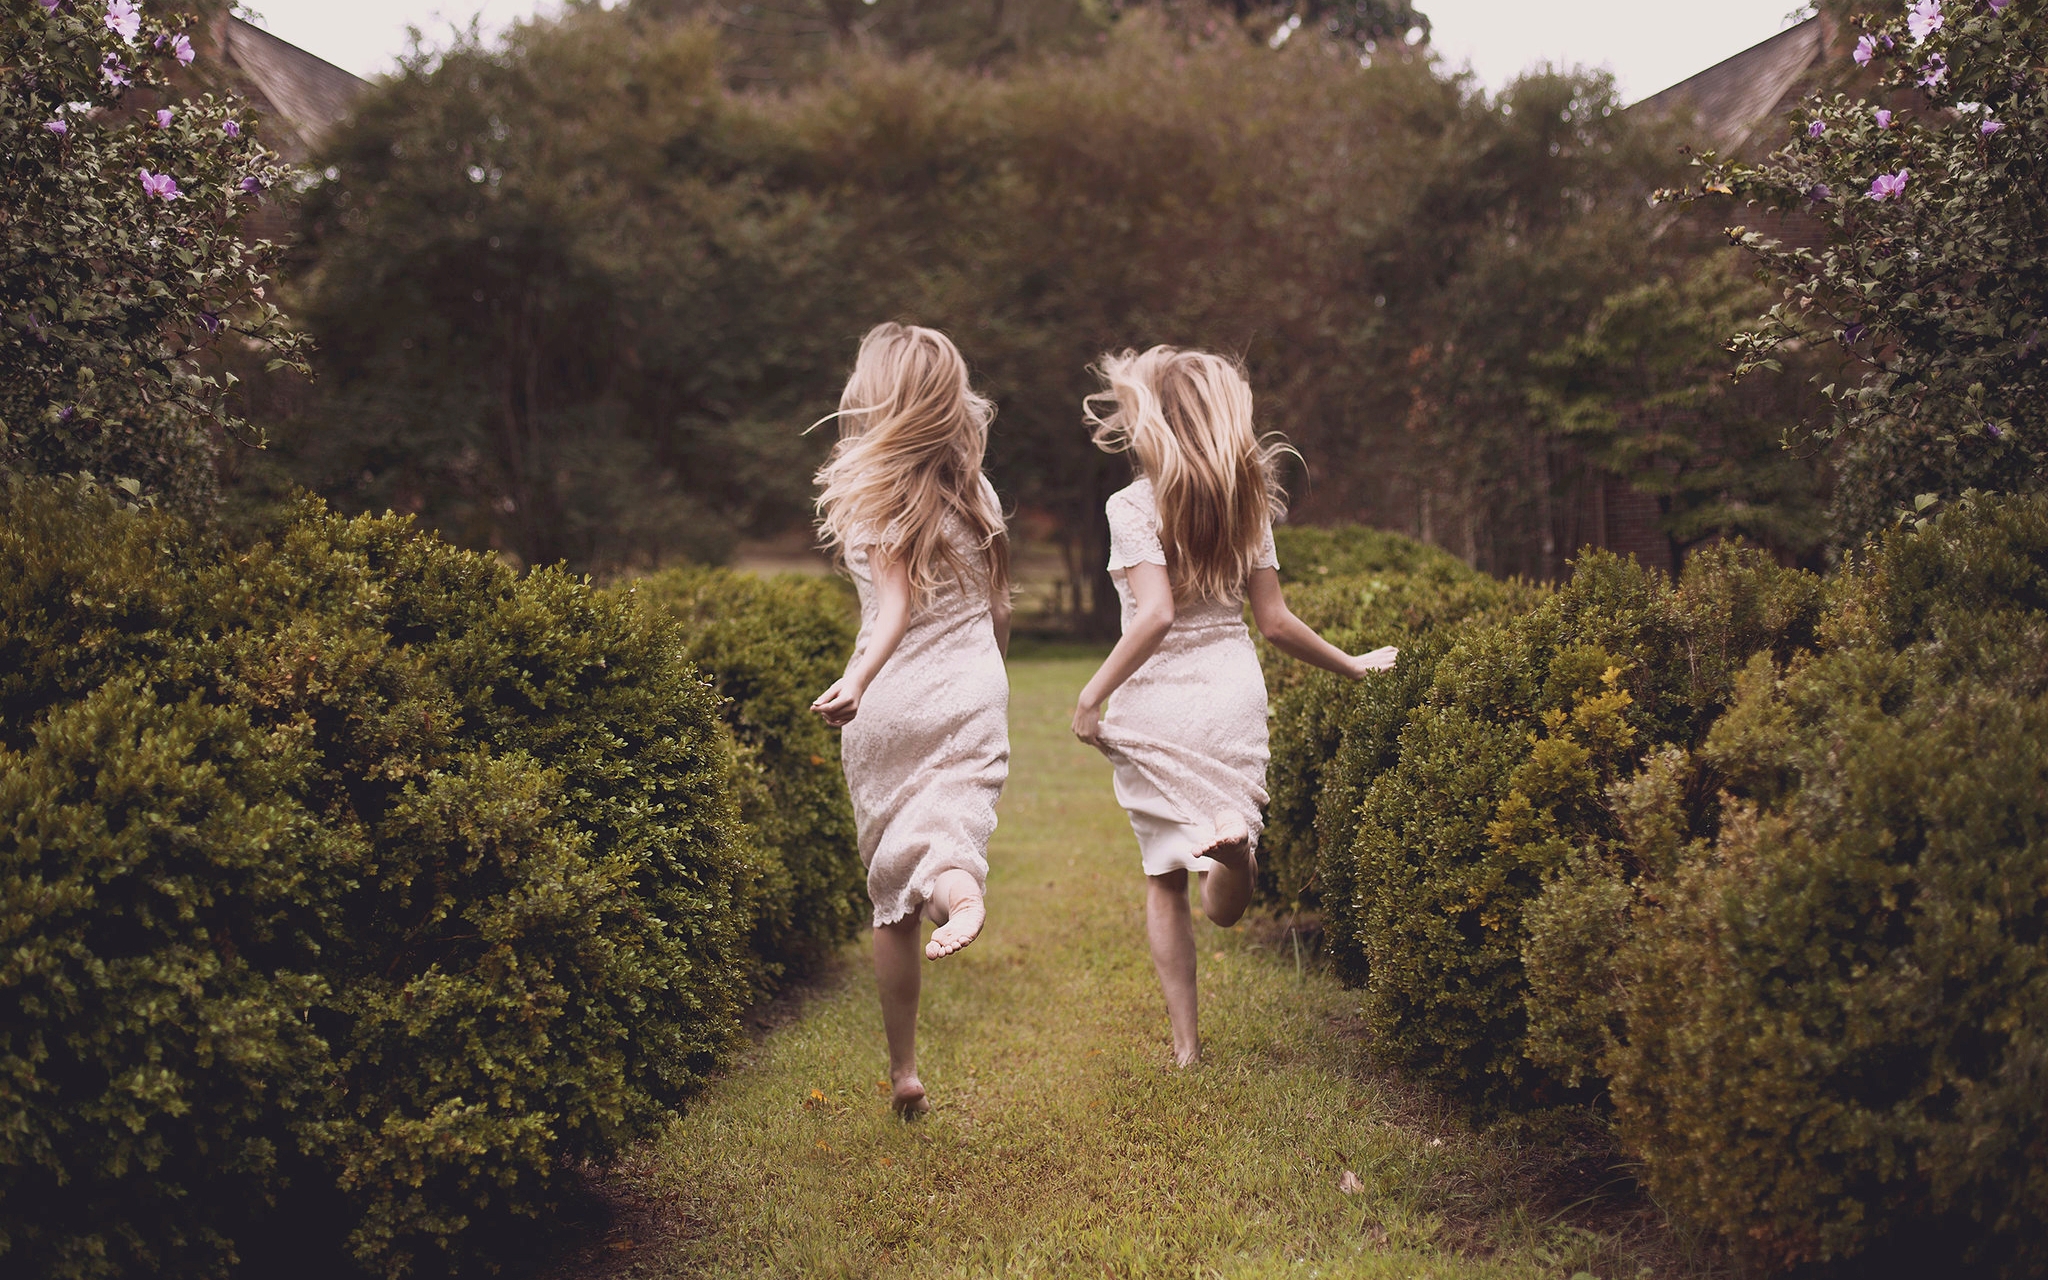 People 2048x1280 women shrubbery shrubs running twins blonde barefoot women outdoors